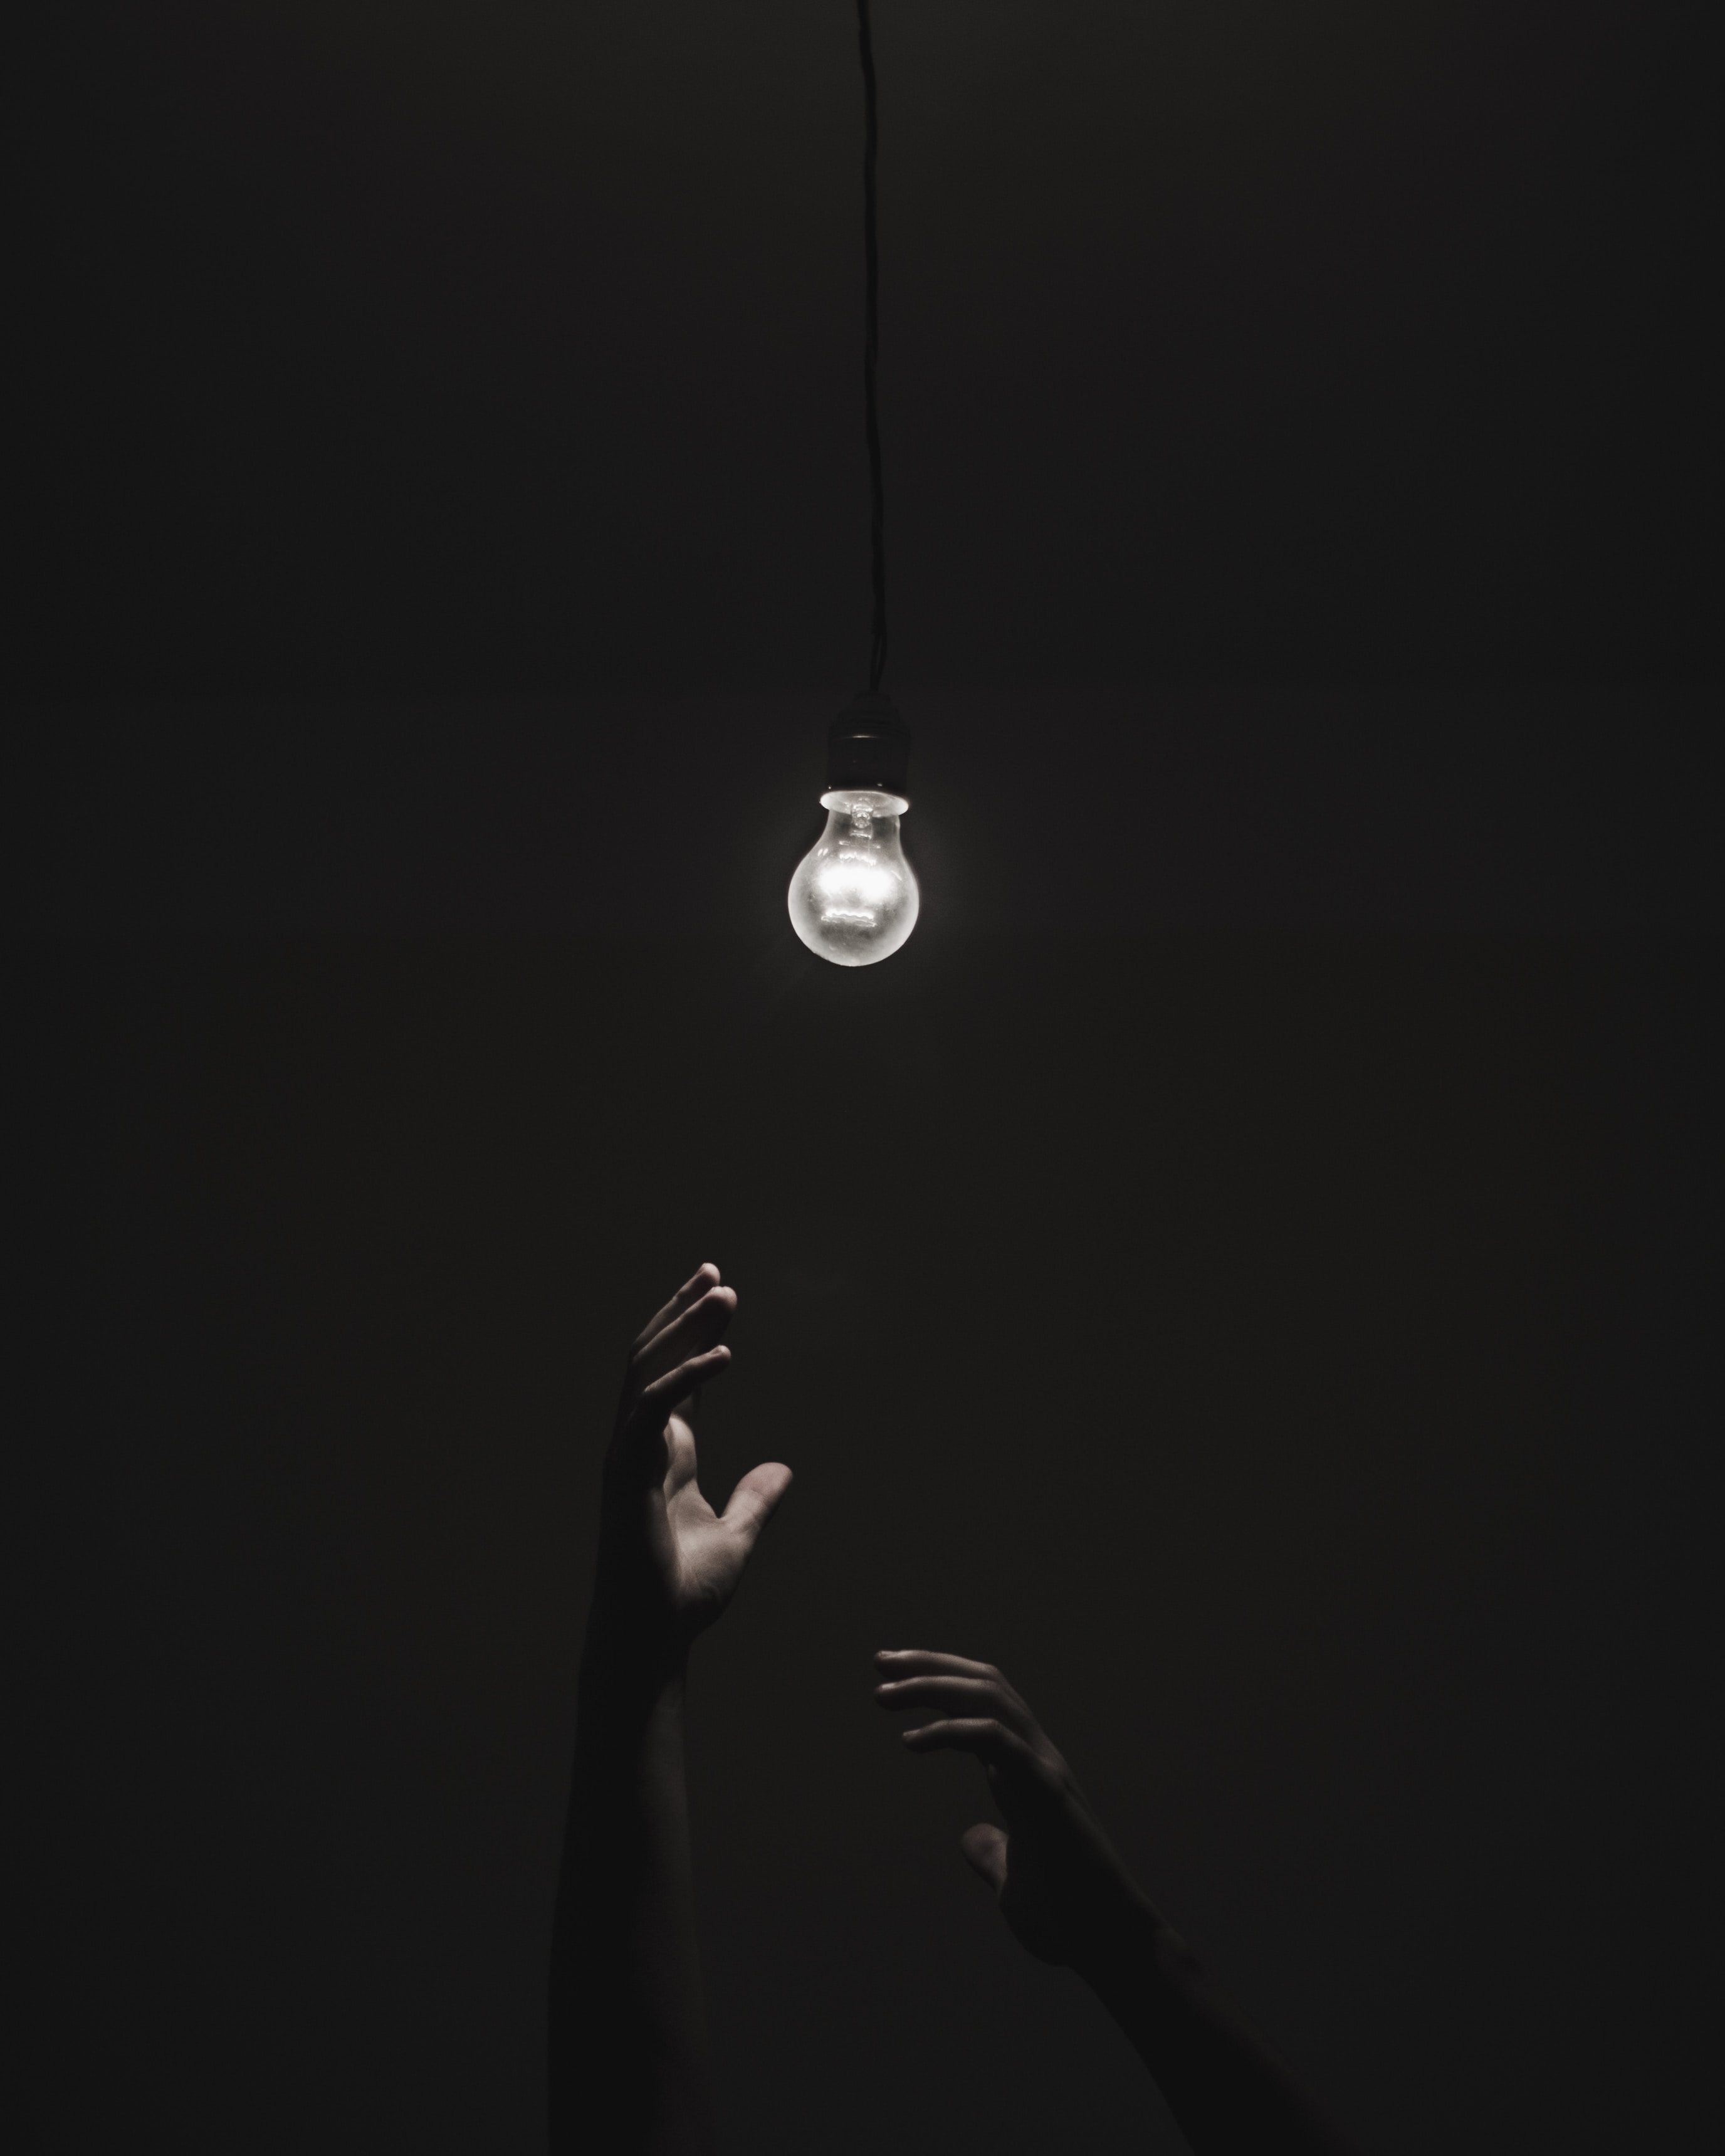 illumination, lighting, light bulb, black, dark, hands